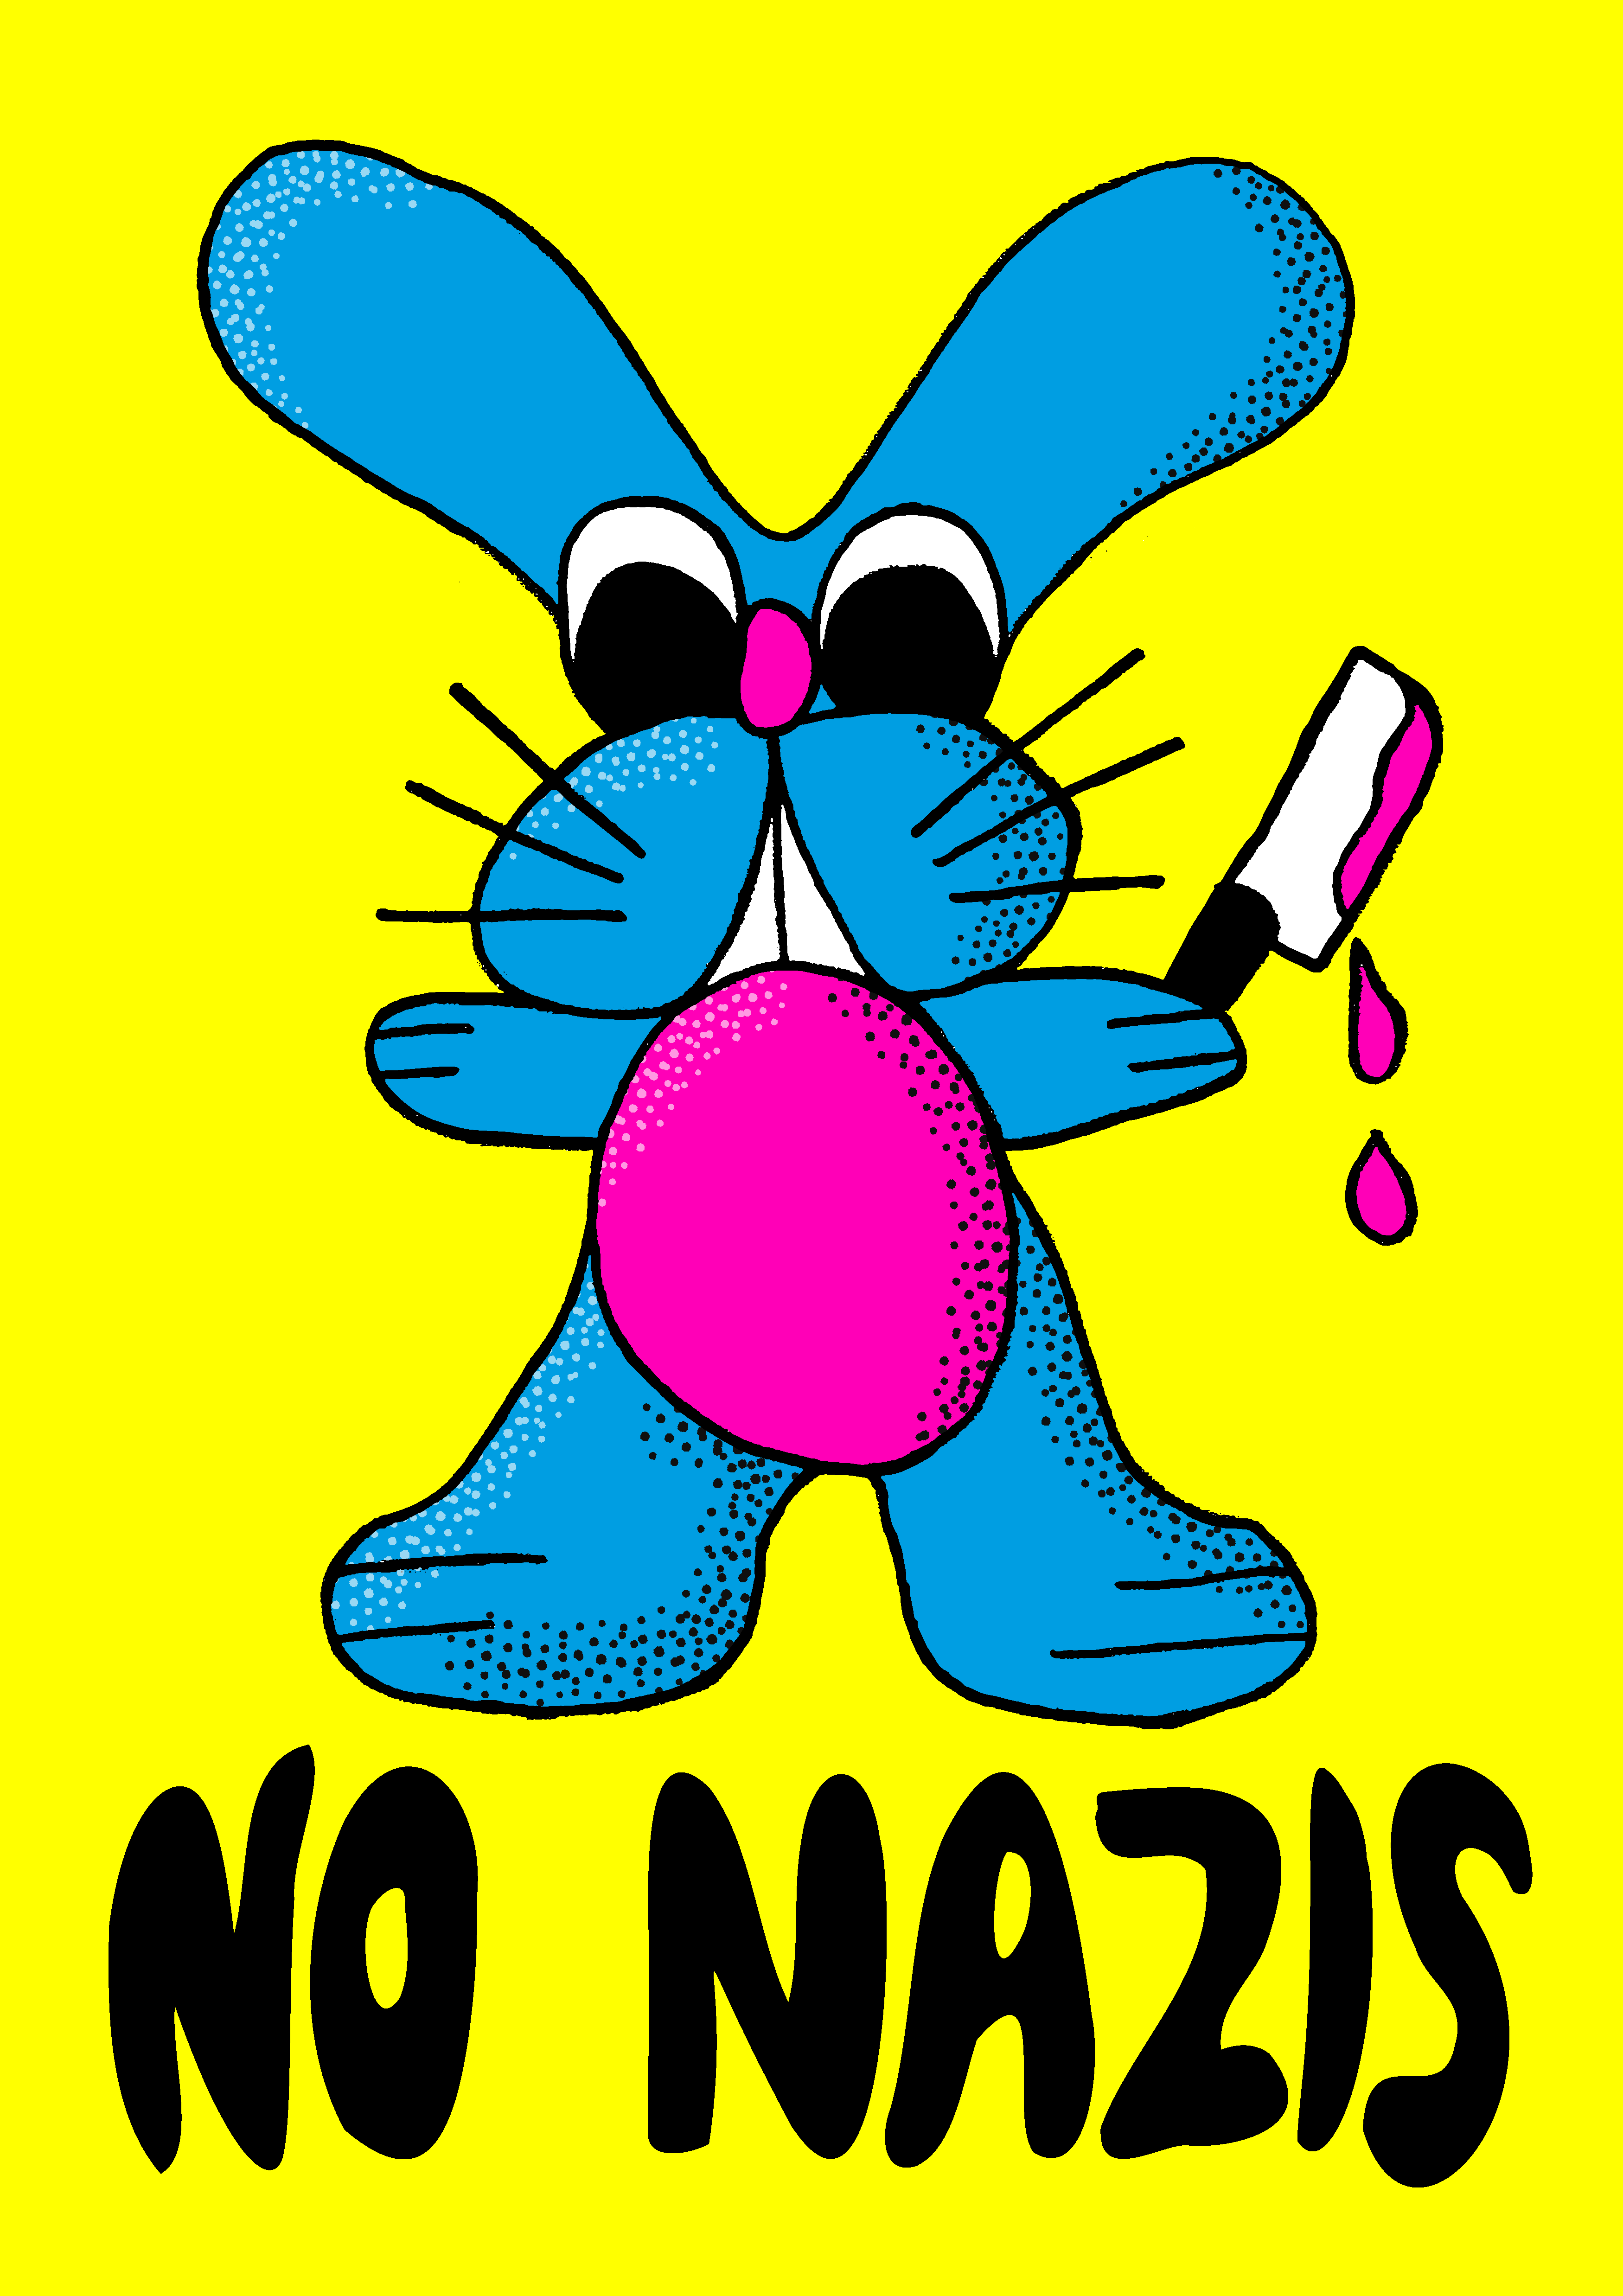 No Nazis